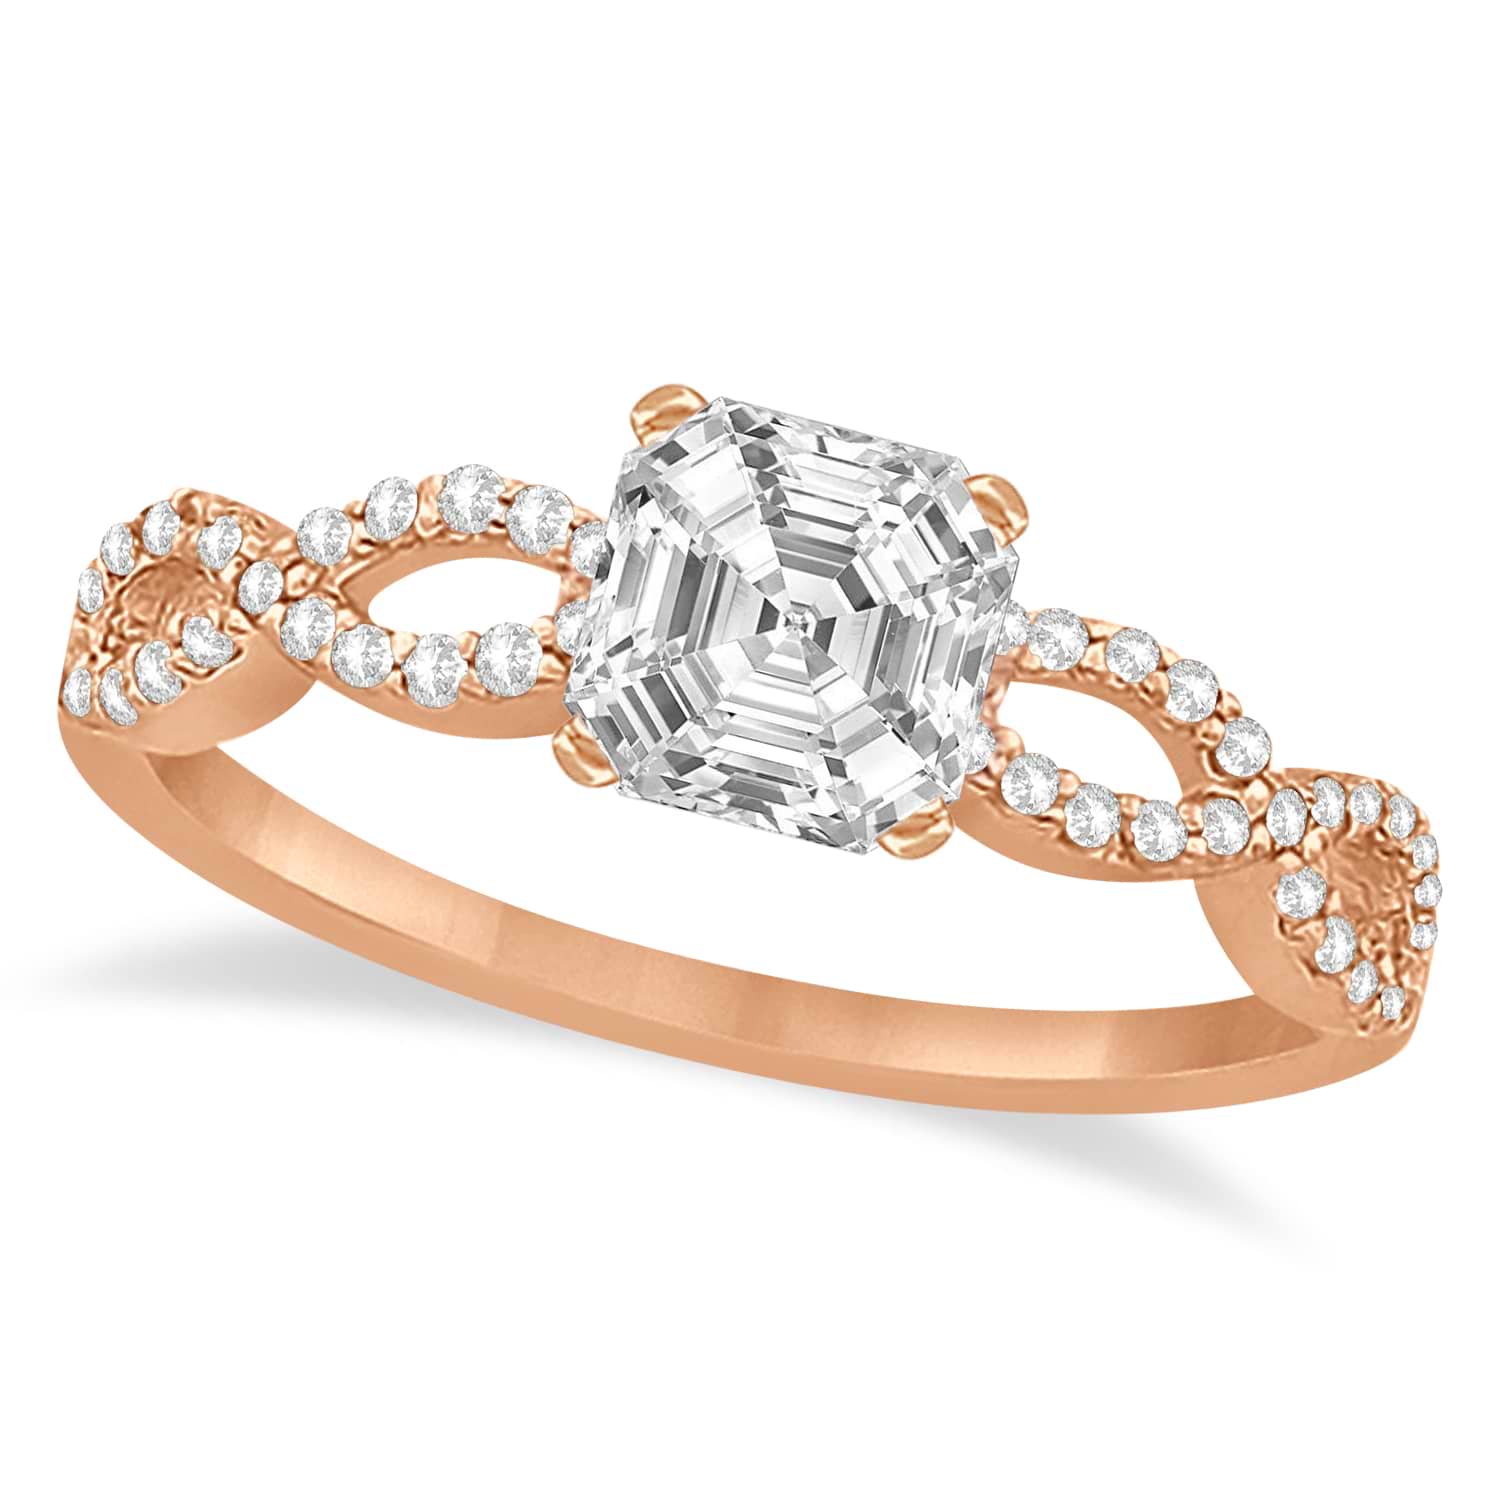 Infinity Asscher-Cut Lab Grown Diamond Engagement Ring 14k Rose Gold (0.50ct)